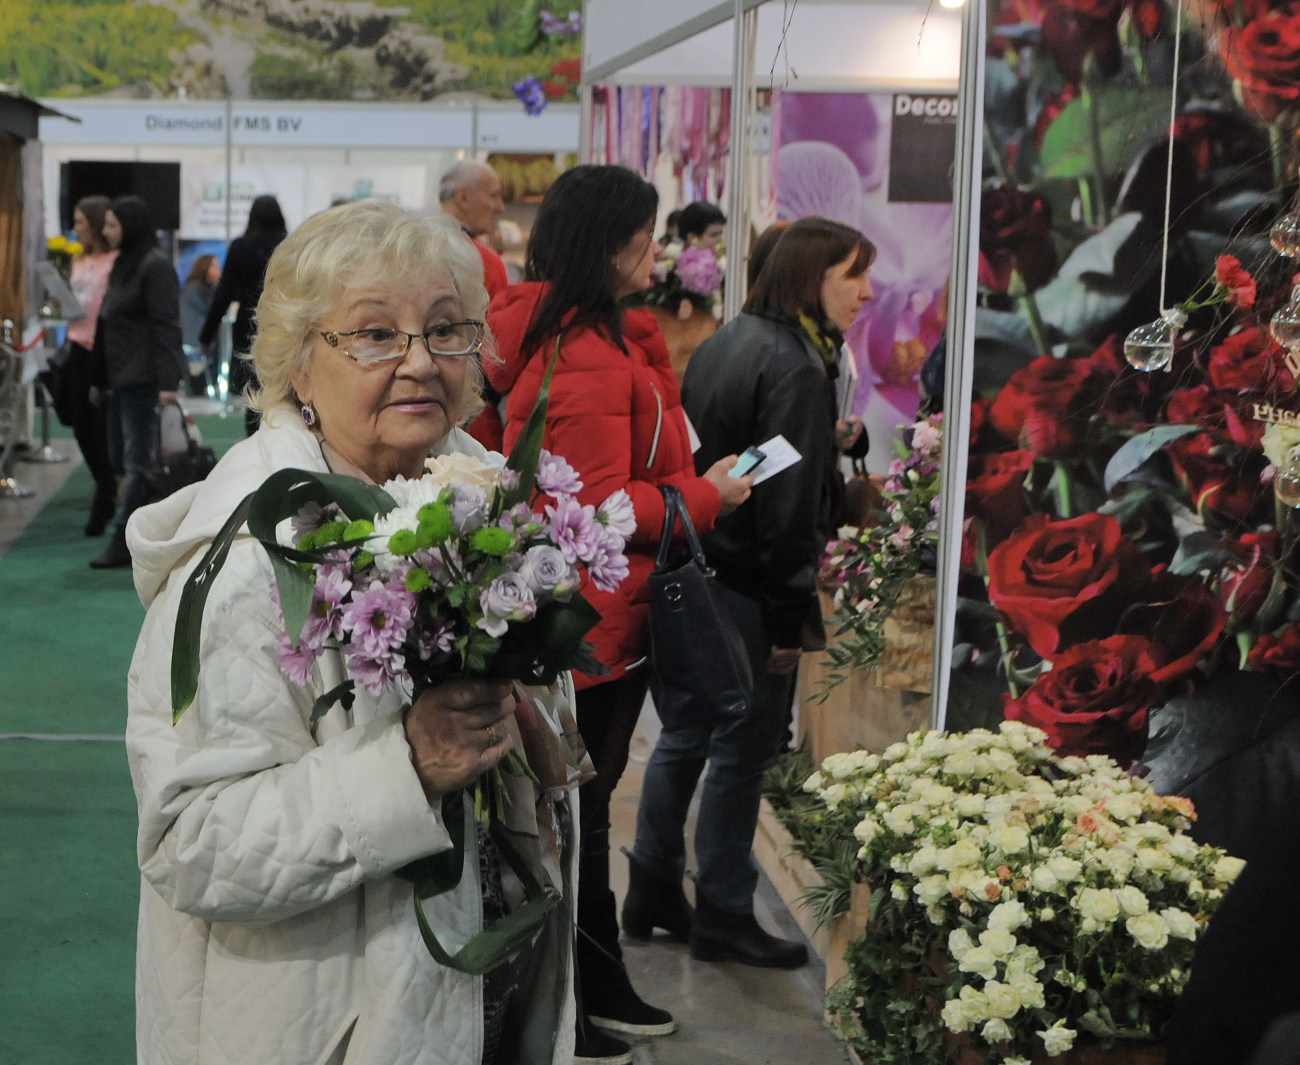 В Киеве проходит выставка по садоводству, ландшафтному дизайну и флористике